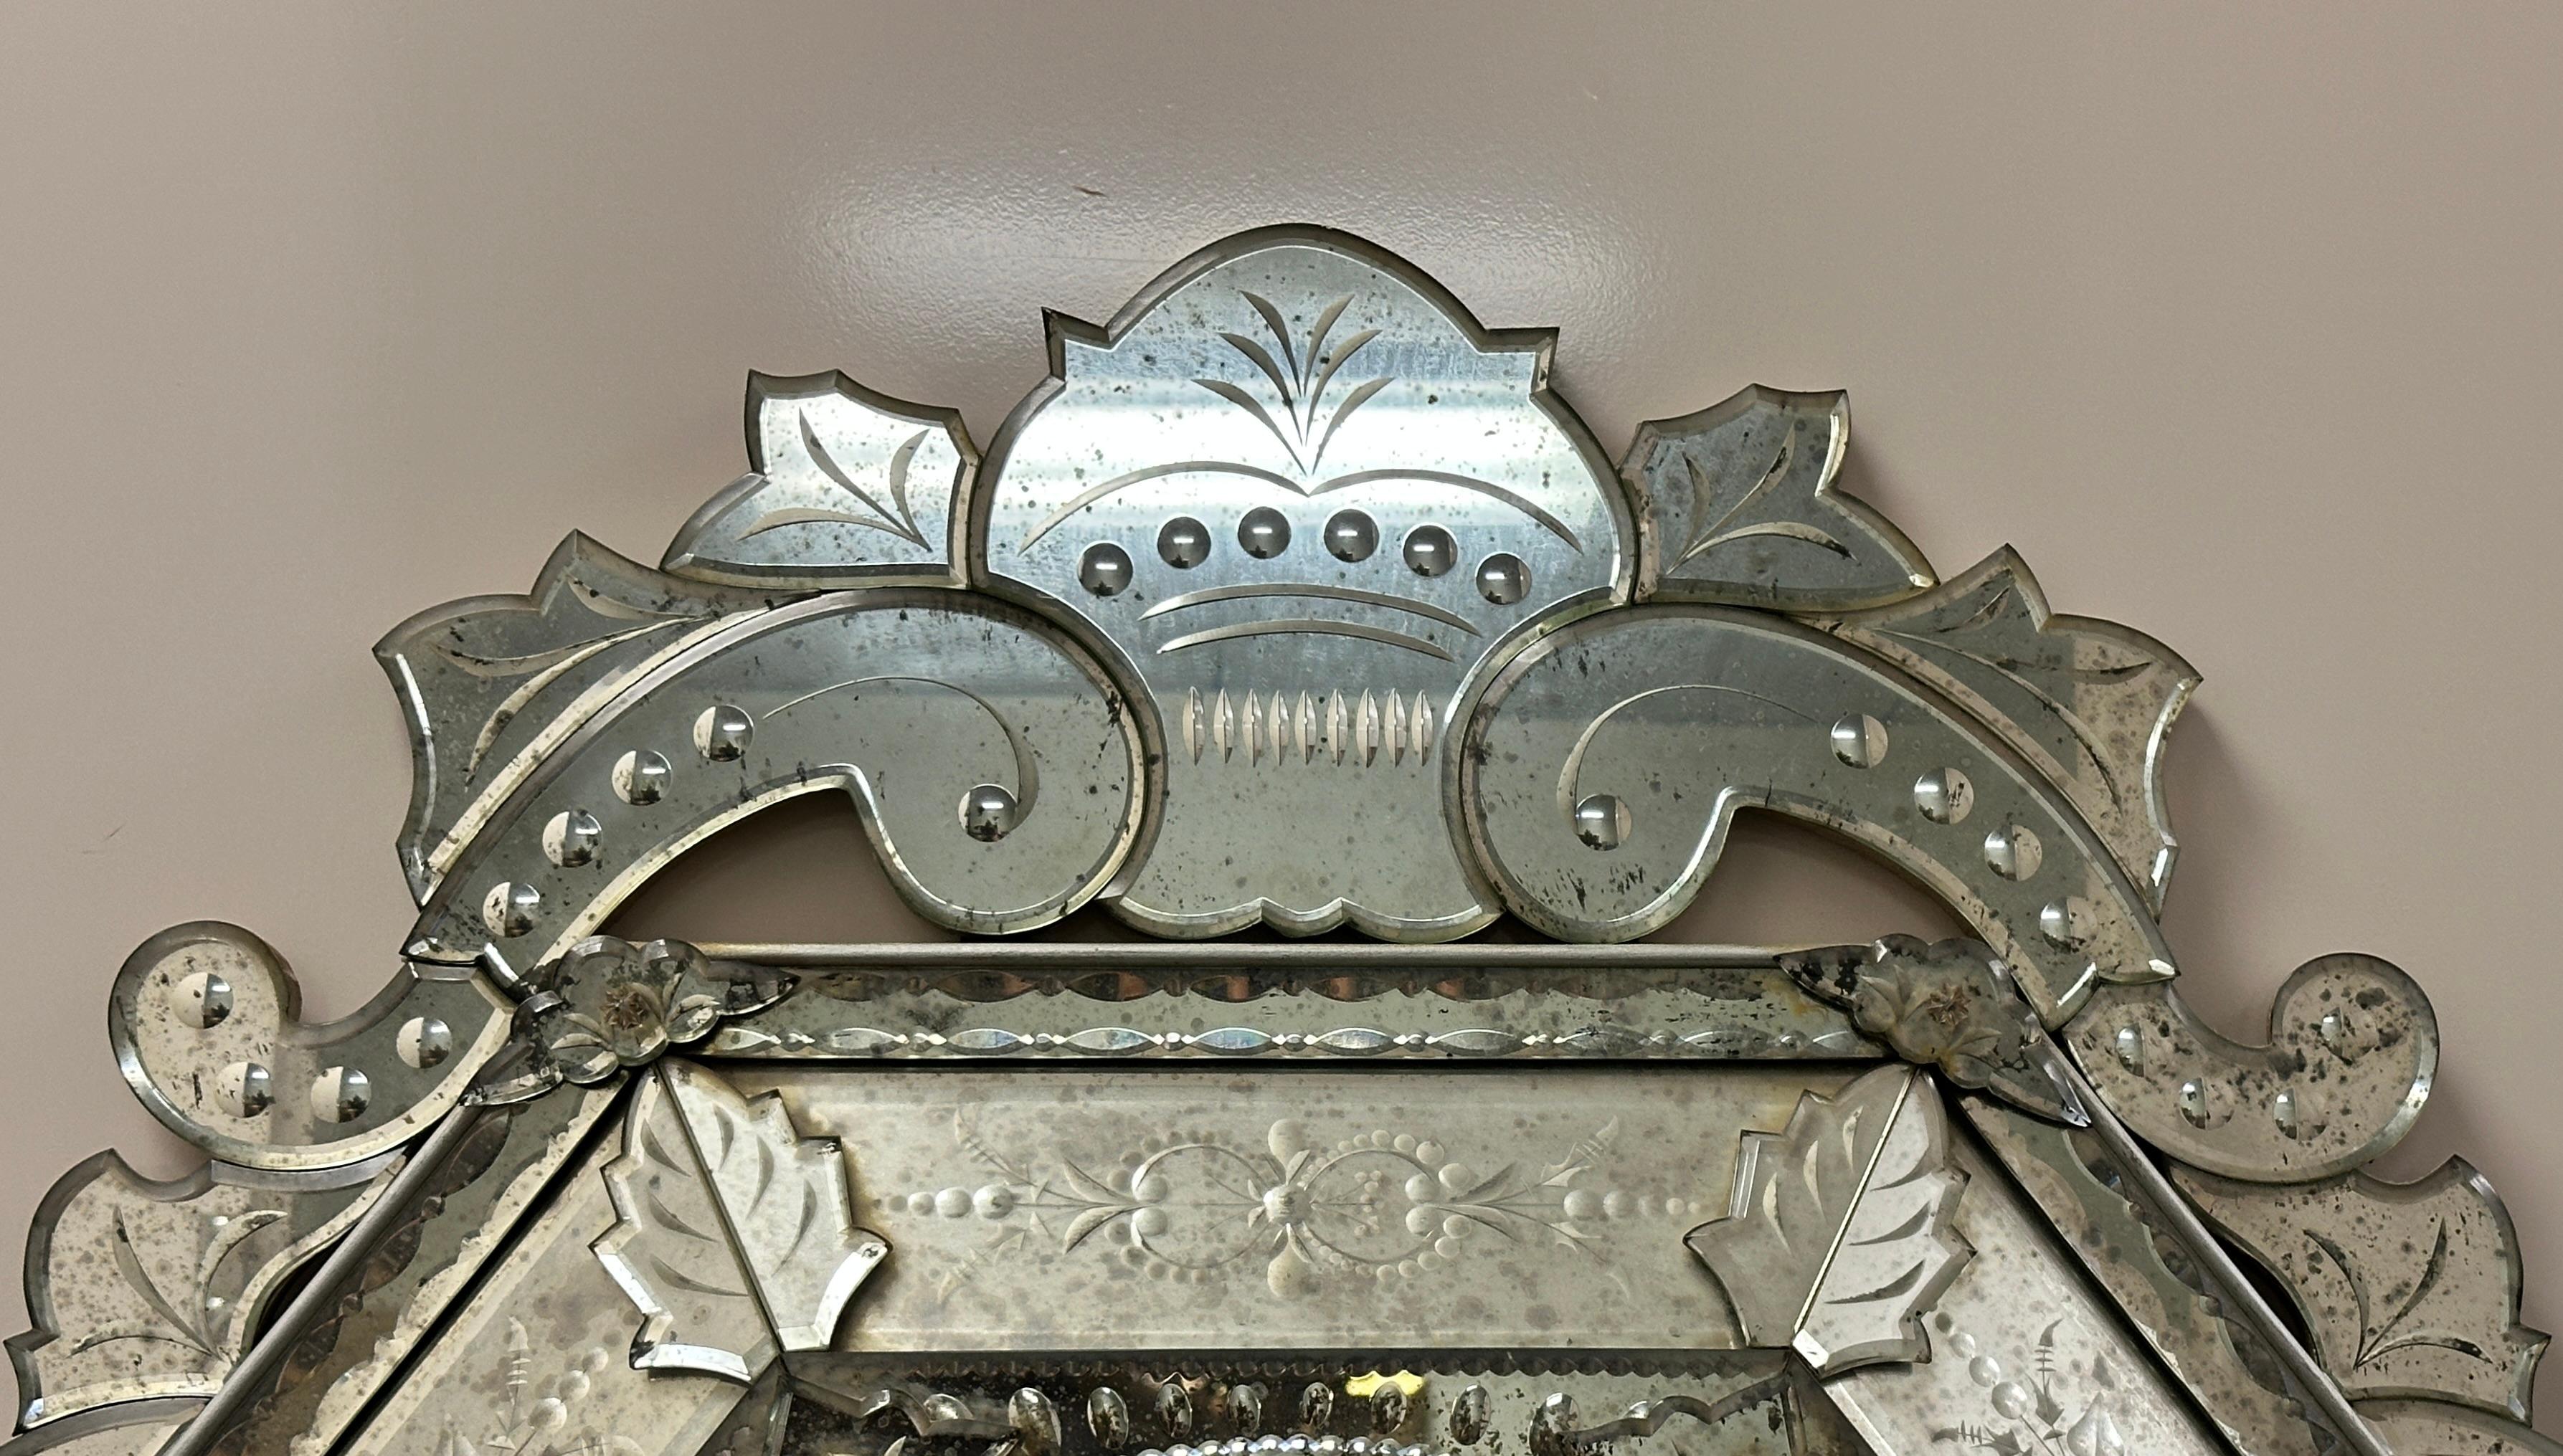 Grand miroir vénitien antique gravé et biseauté. Superbe miroir vénitien ovale et octogonal gravé et biseauté. Découpage et gravure à la roue en cuivre, ainsi que découpage en biseau d'ovales et d'olives. Ce grand miroir vénitien ancien est en très